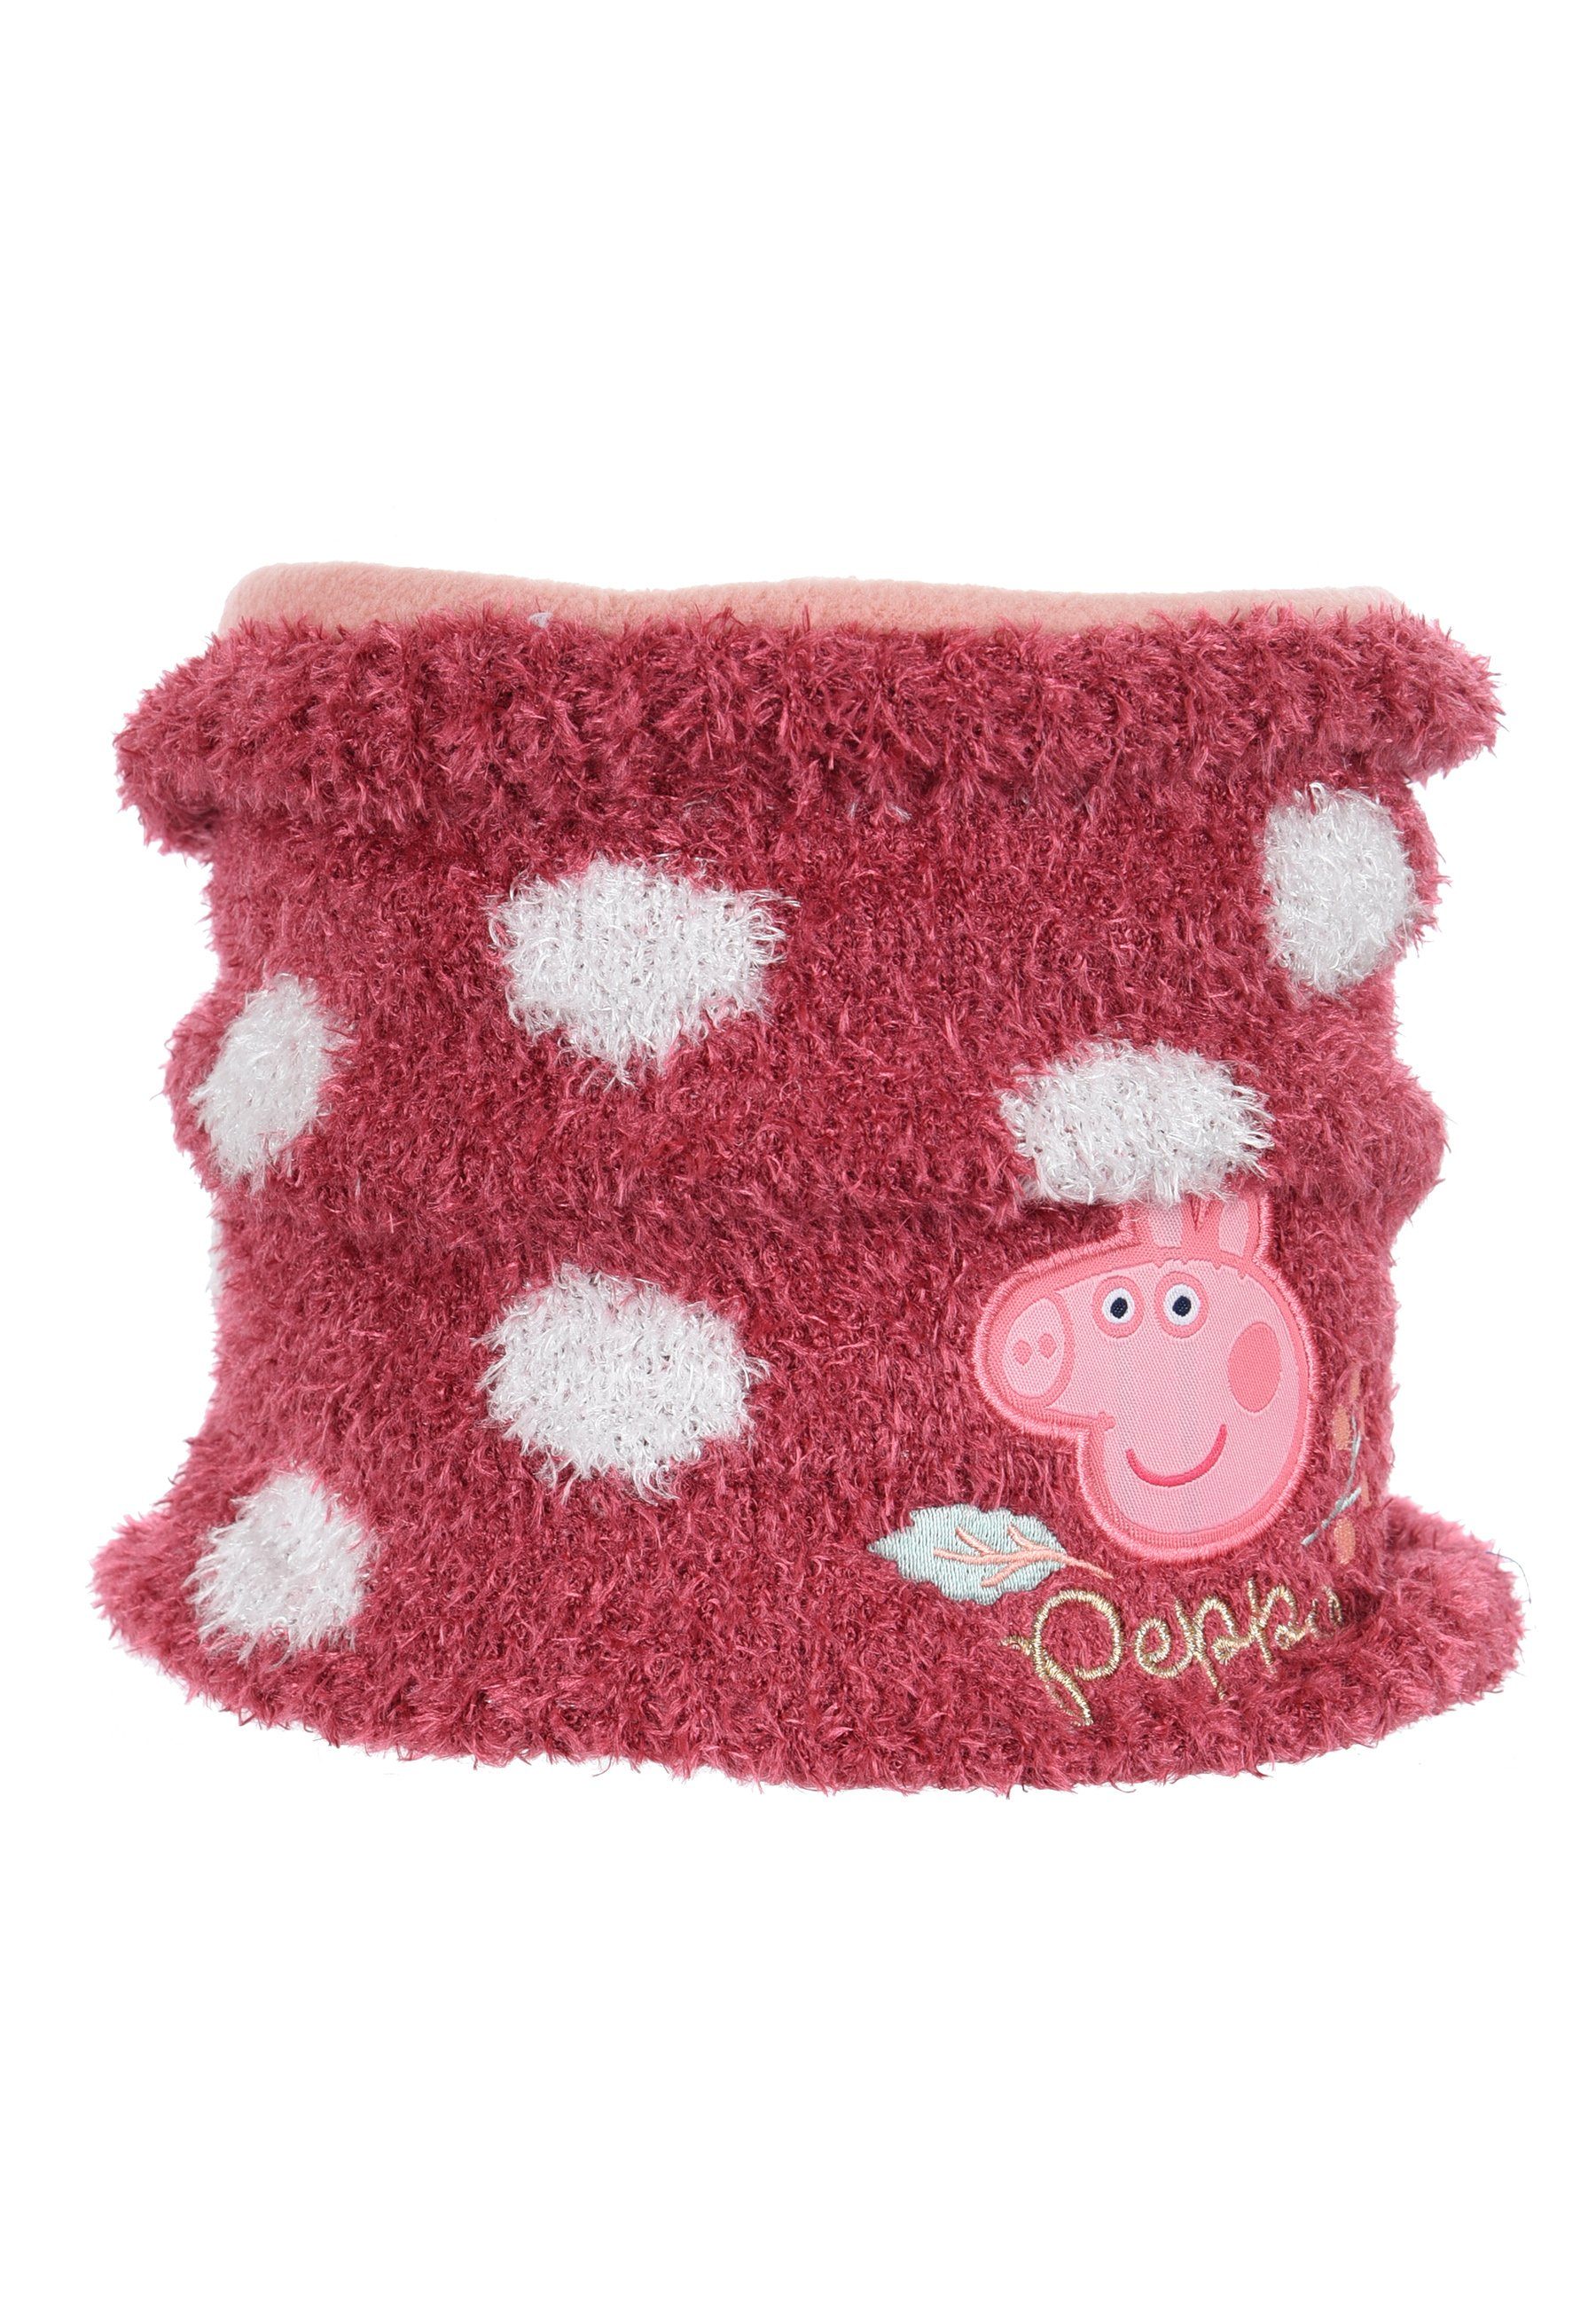 Peppa Pig Loop Kinder Mädchen Winter-Schal Schlauch-Schal Pink